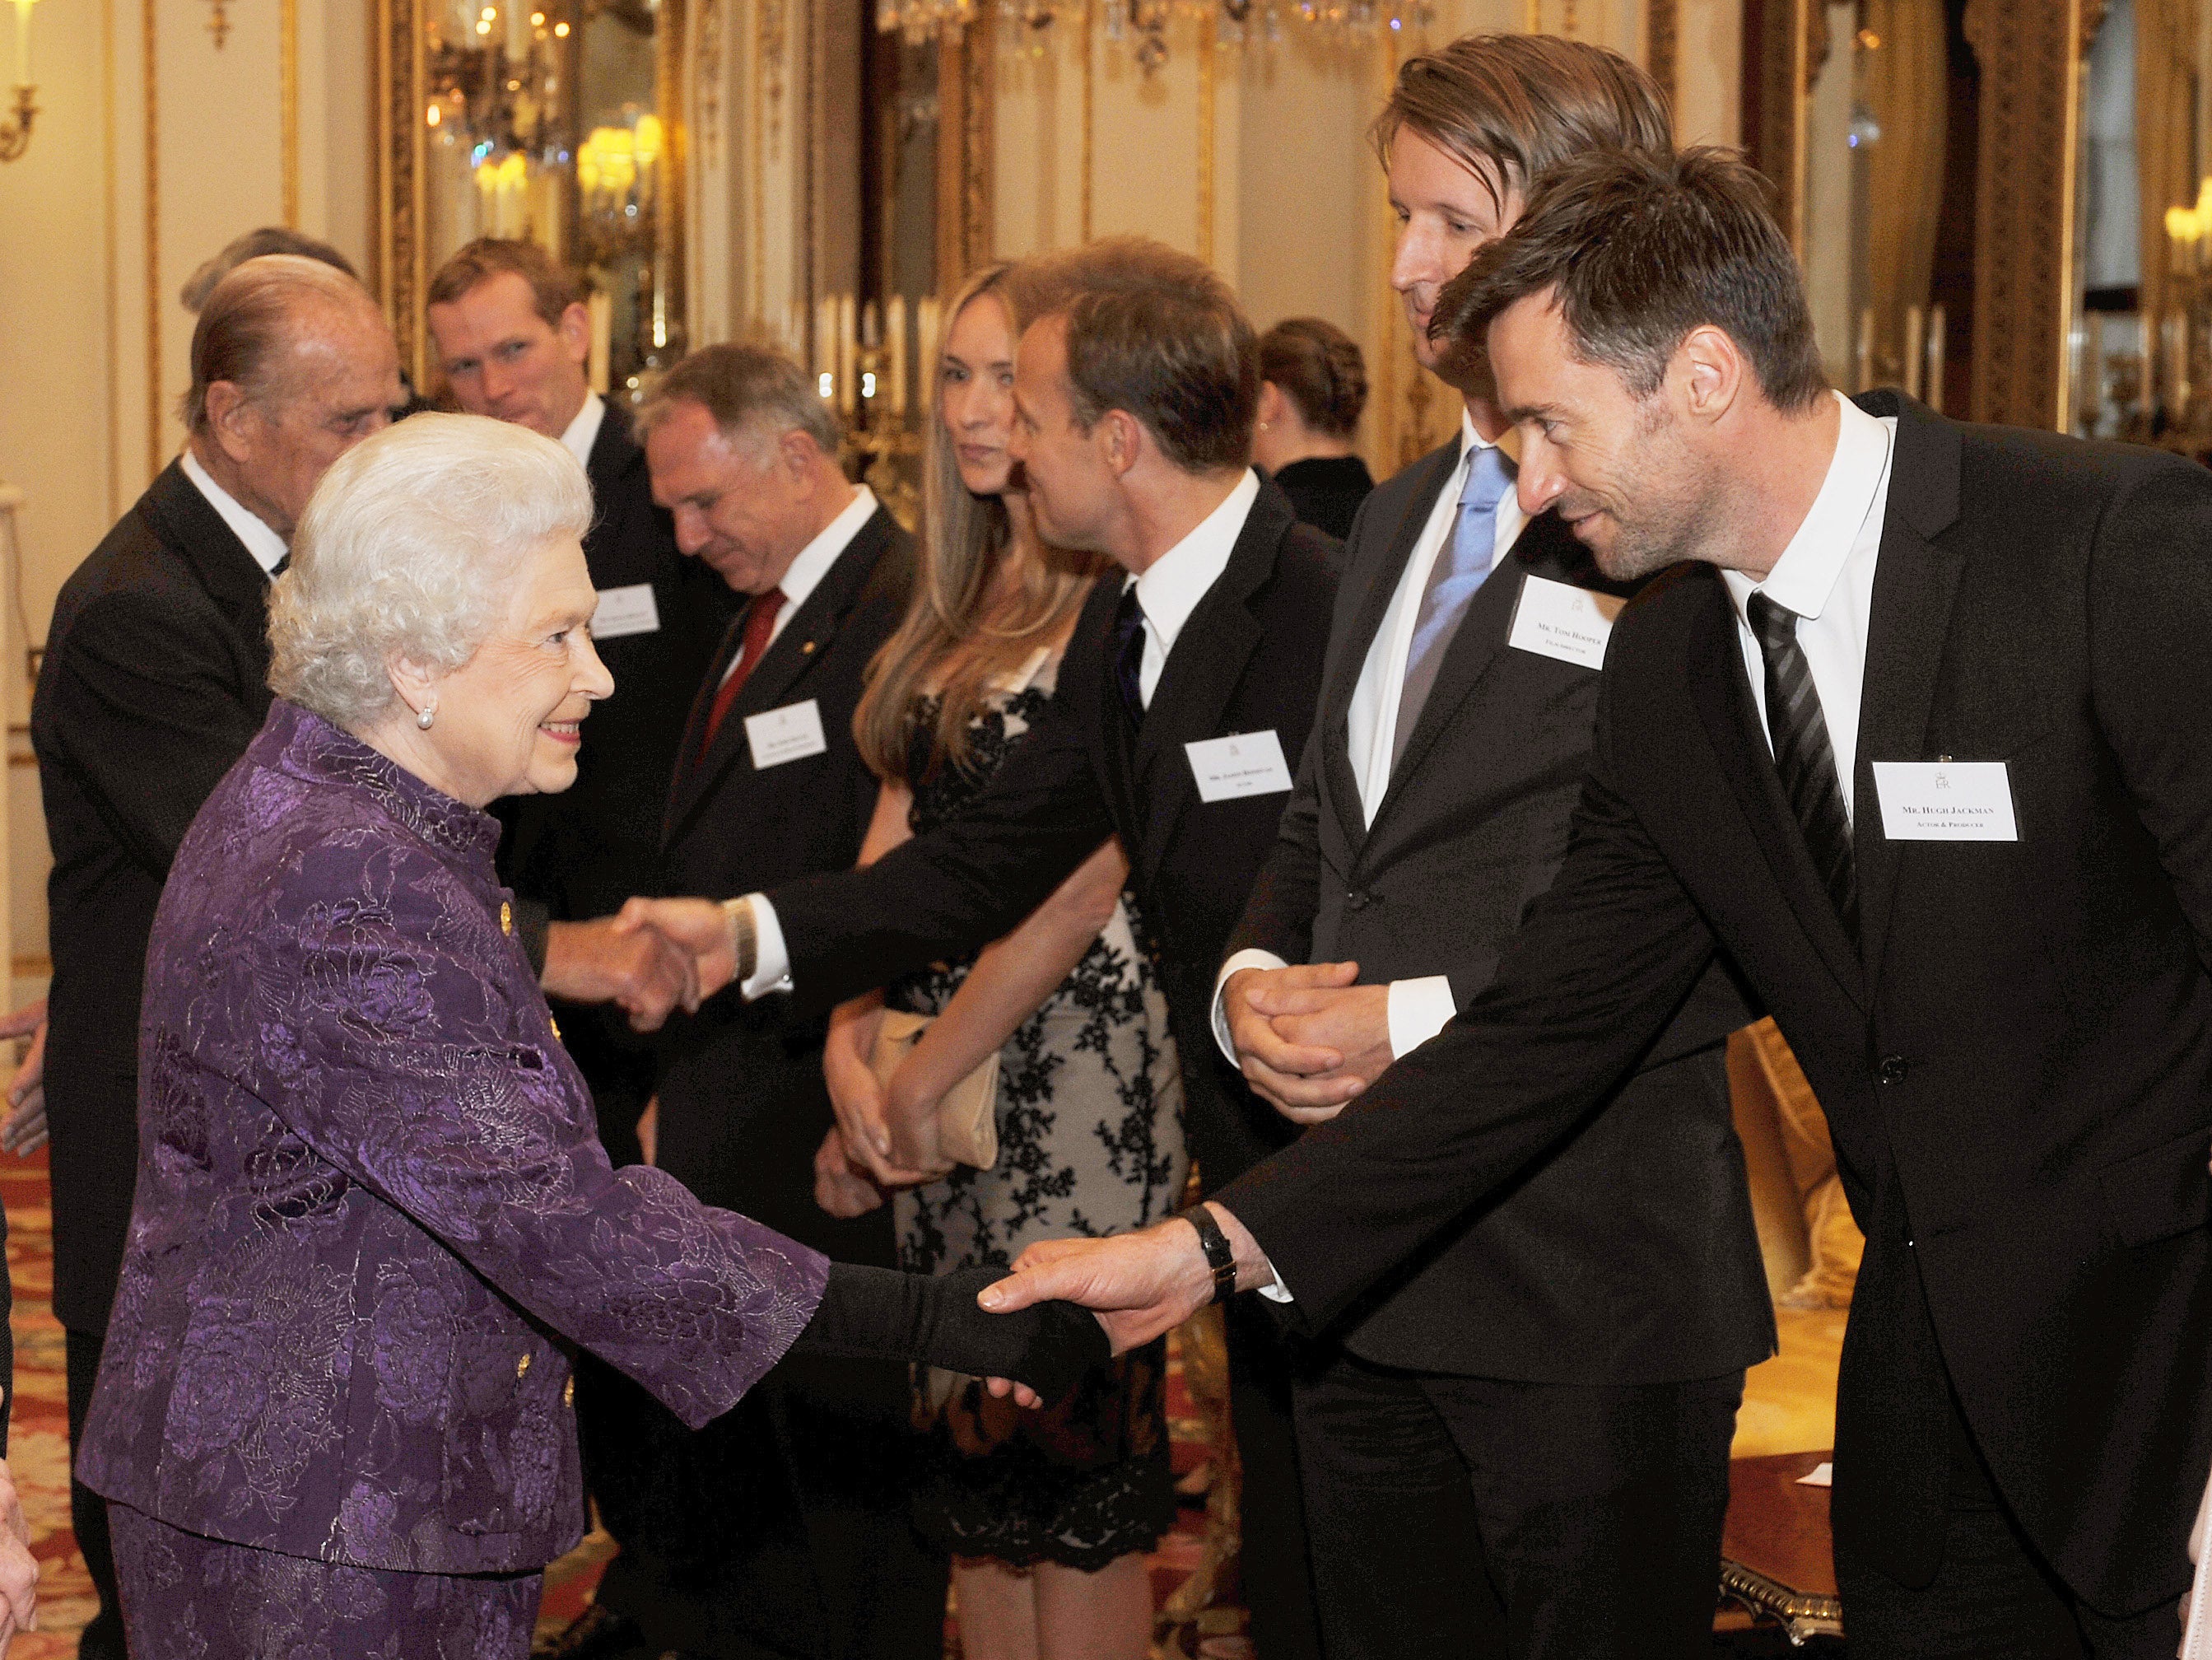 The Queen meets Hugh Jackman in 2011